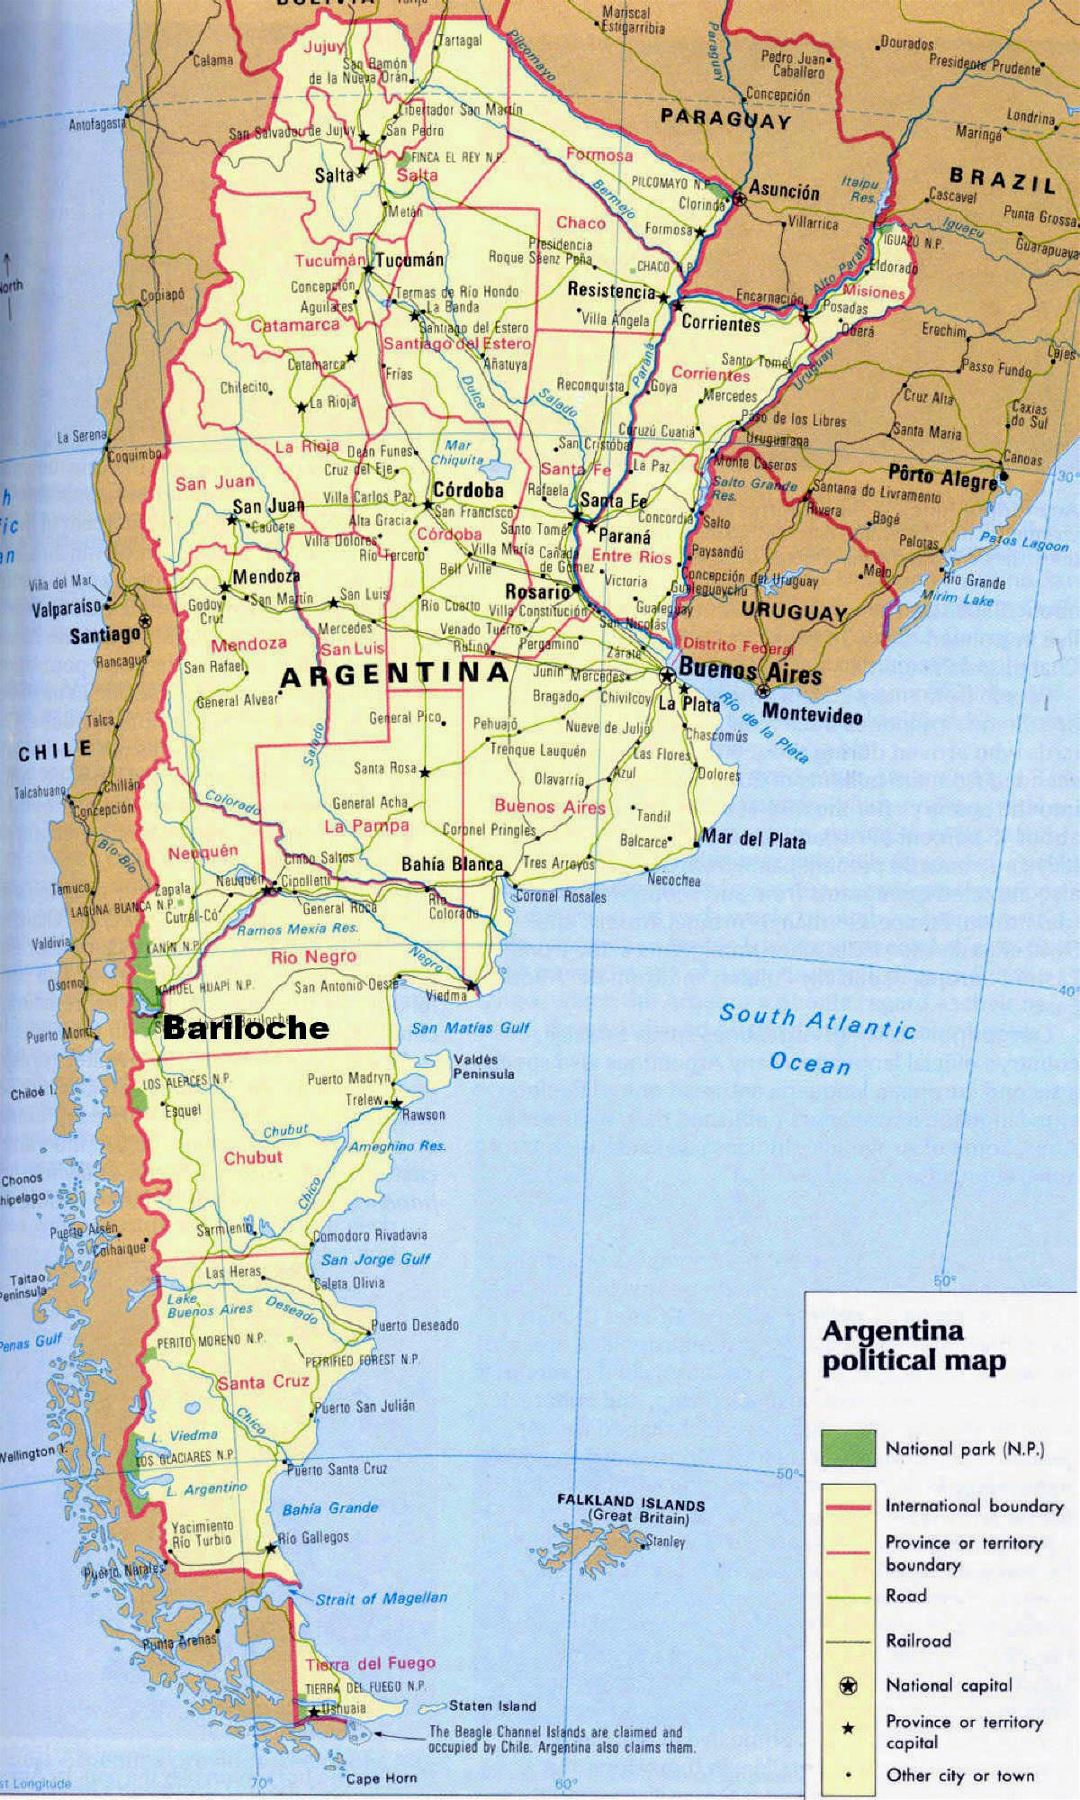 Detallado mapa político de Argentina con parques nacionales